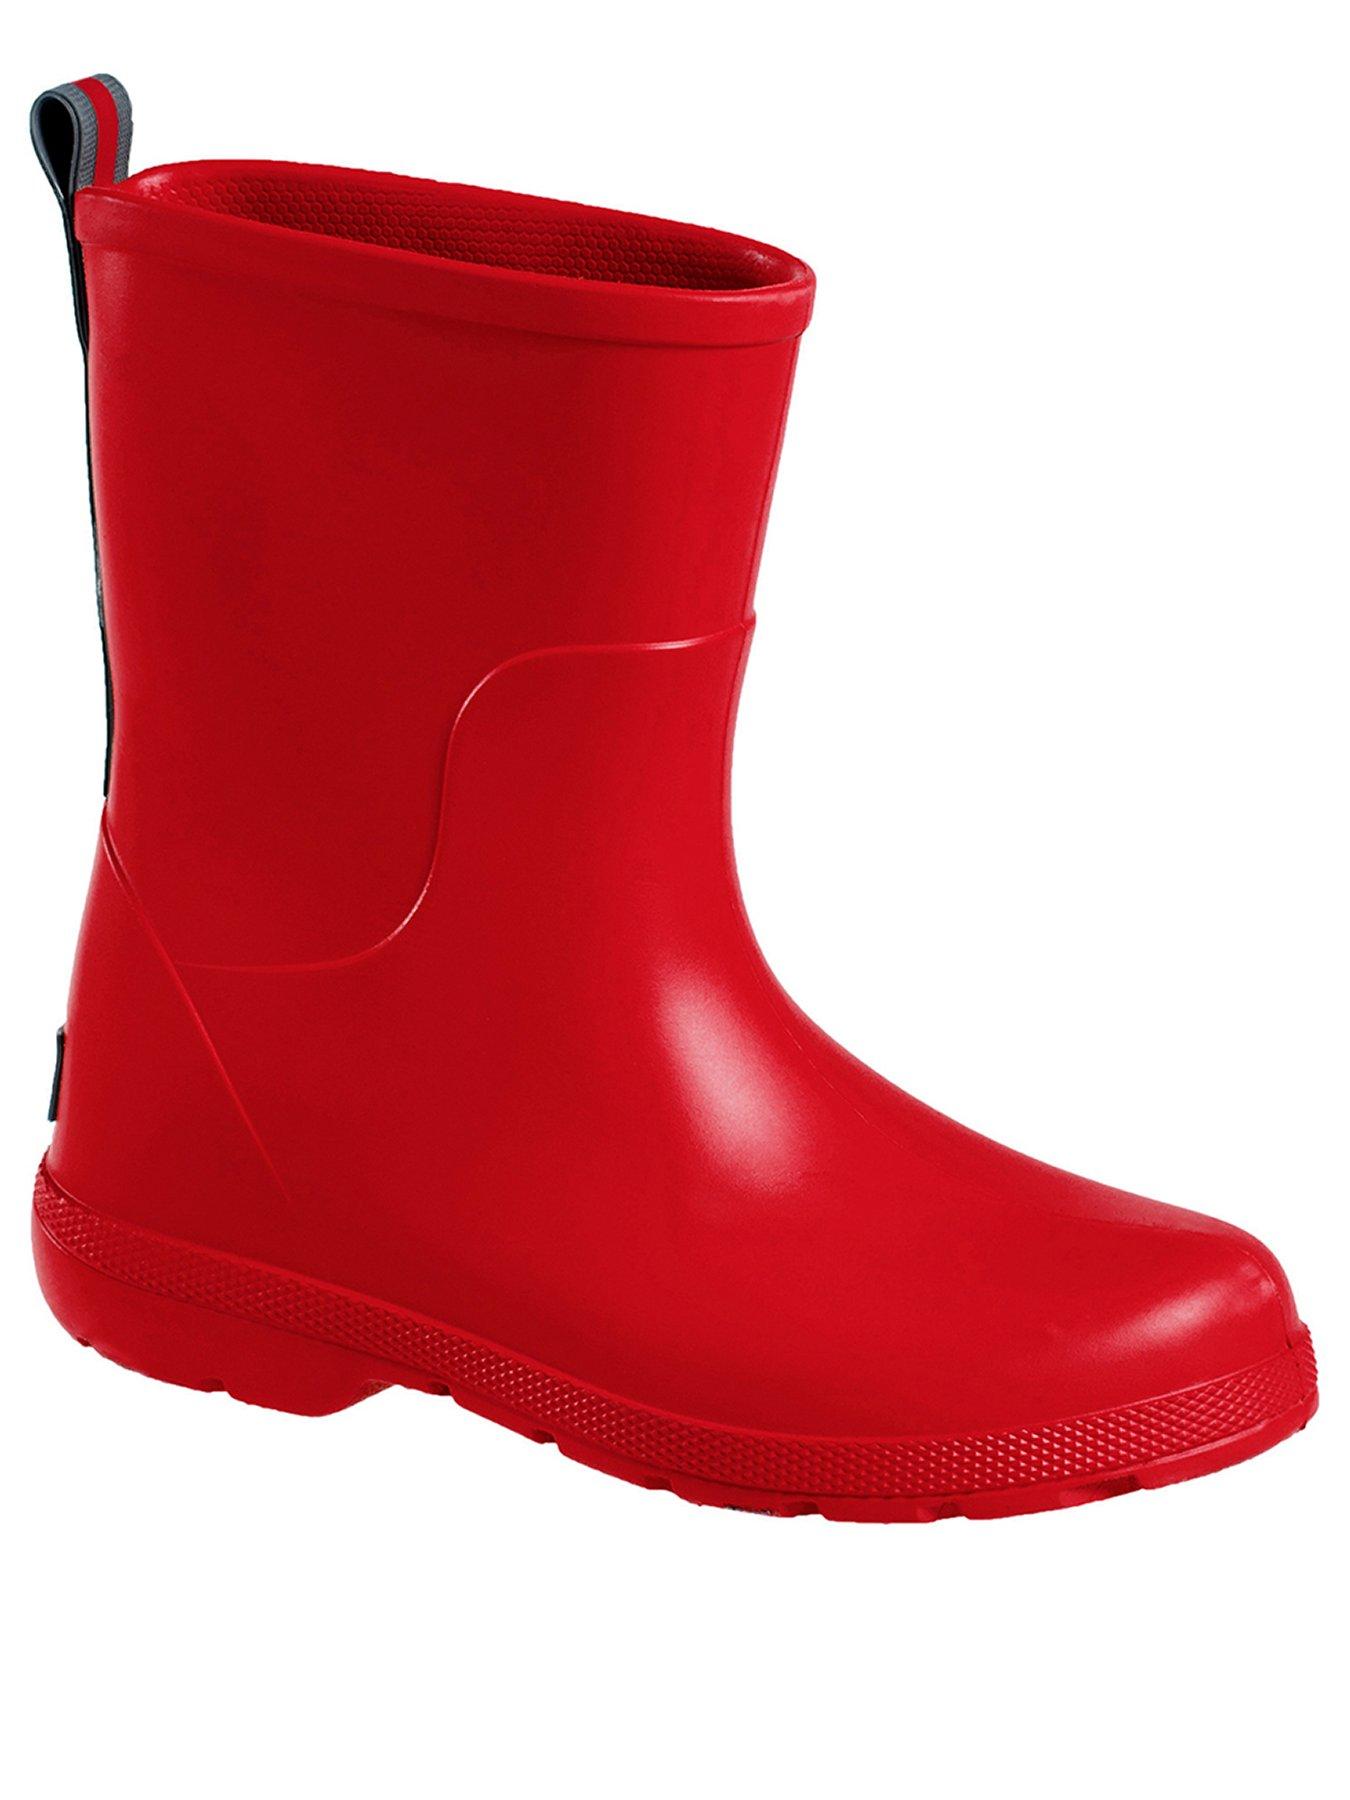  Kids Charley Rain Boot - Red